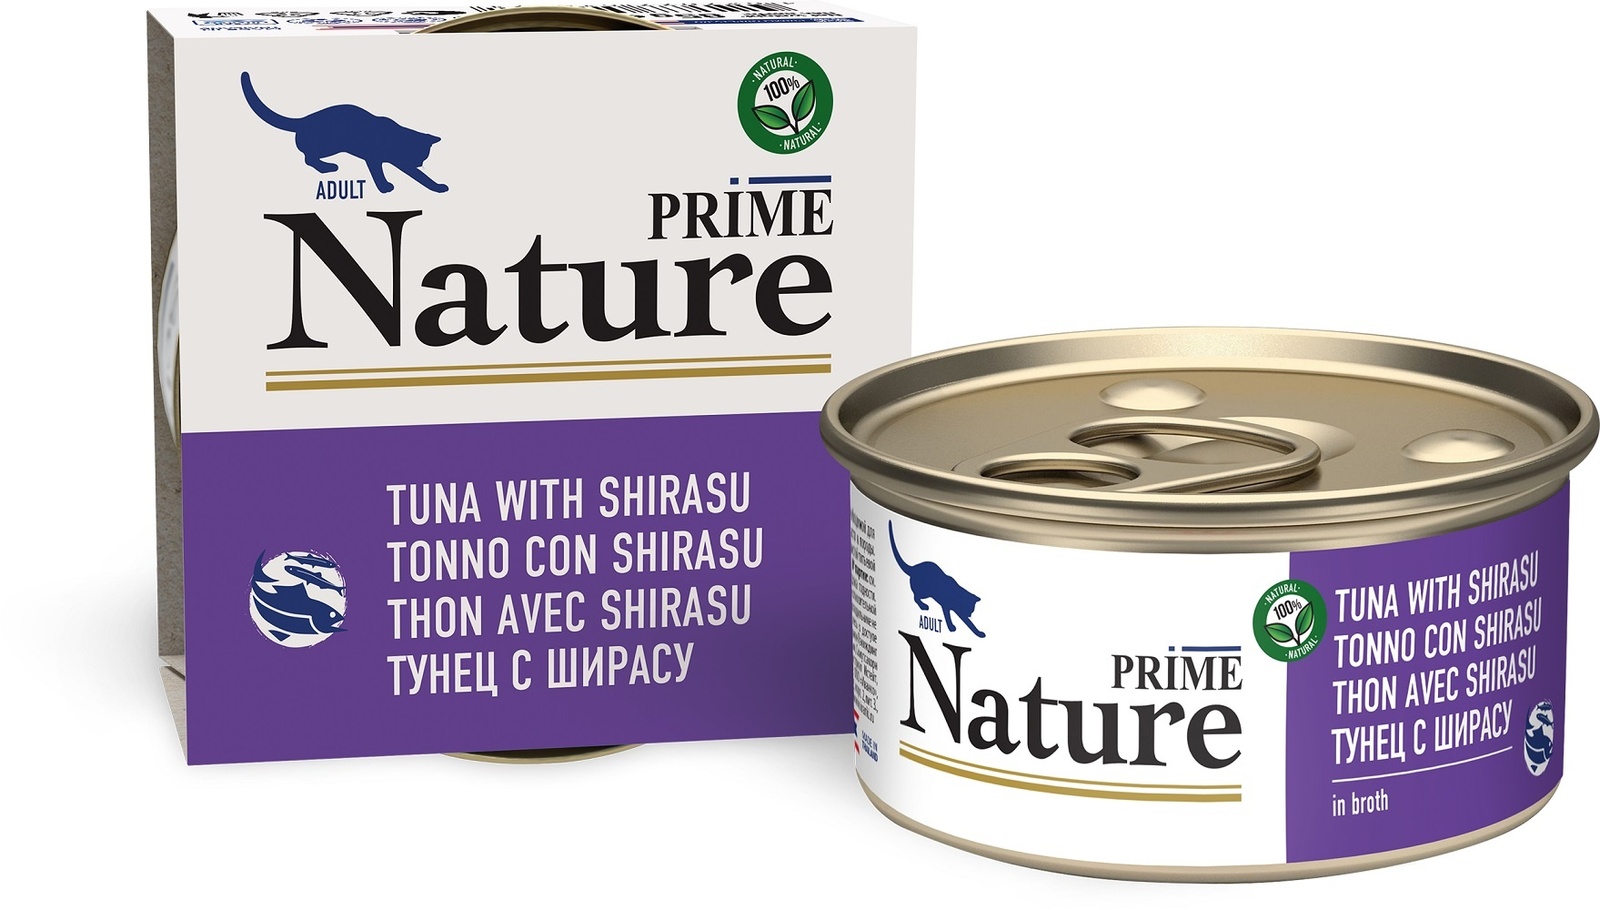 Prime Nature консервы для кошек: тунец с ширасу в бульоне (24 шт)